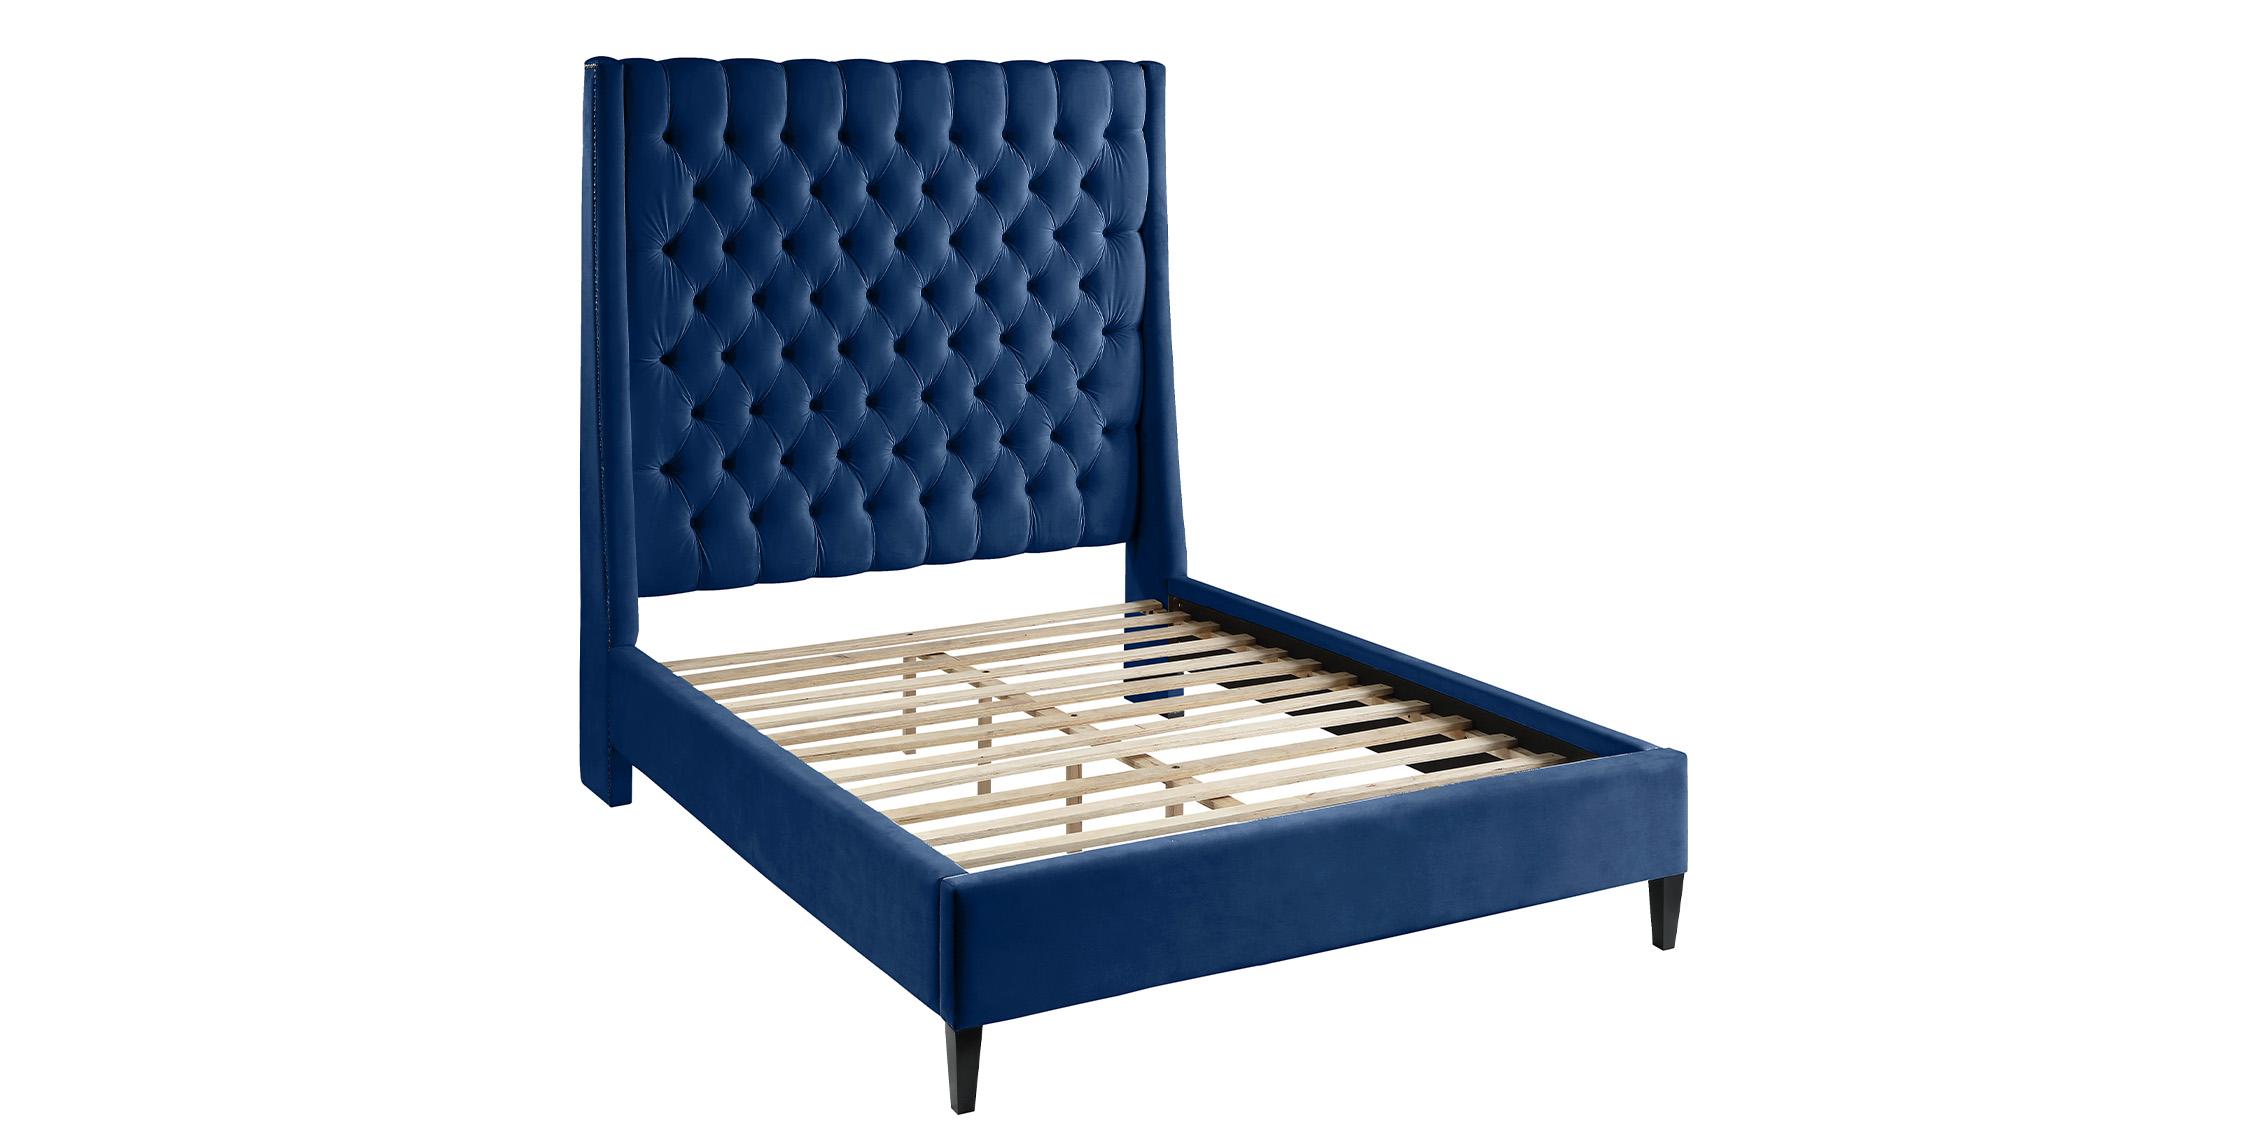 

    
FritzNavy-Q Meridian Furniture Platform Bed
